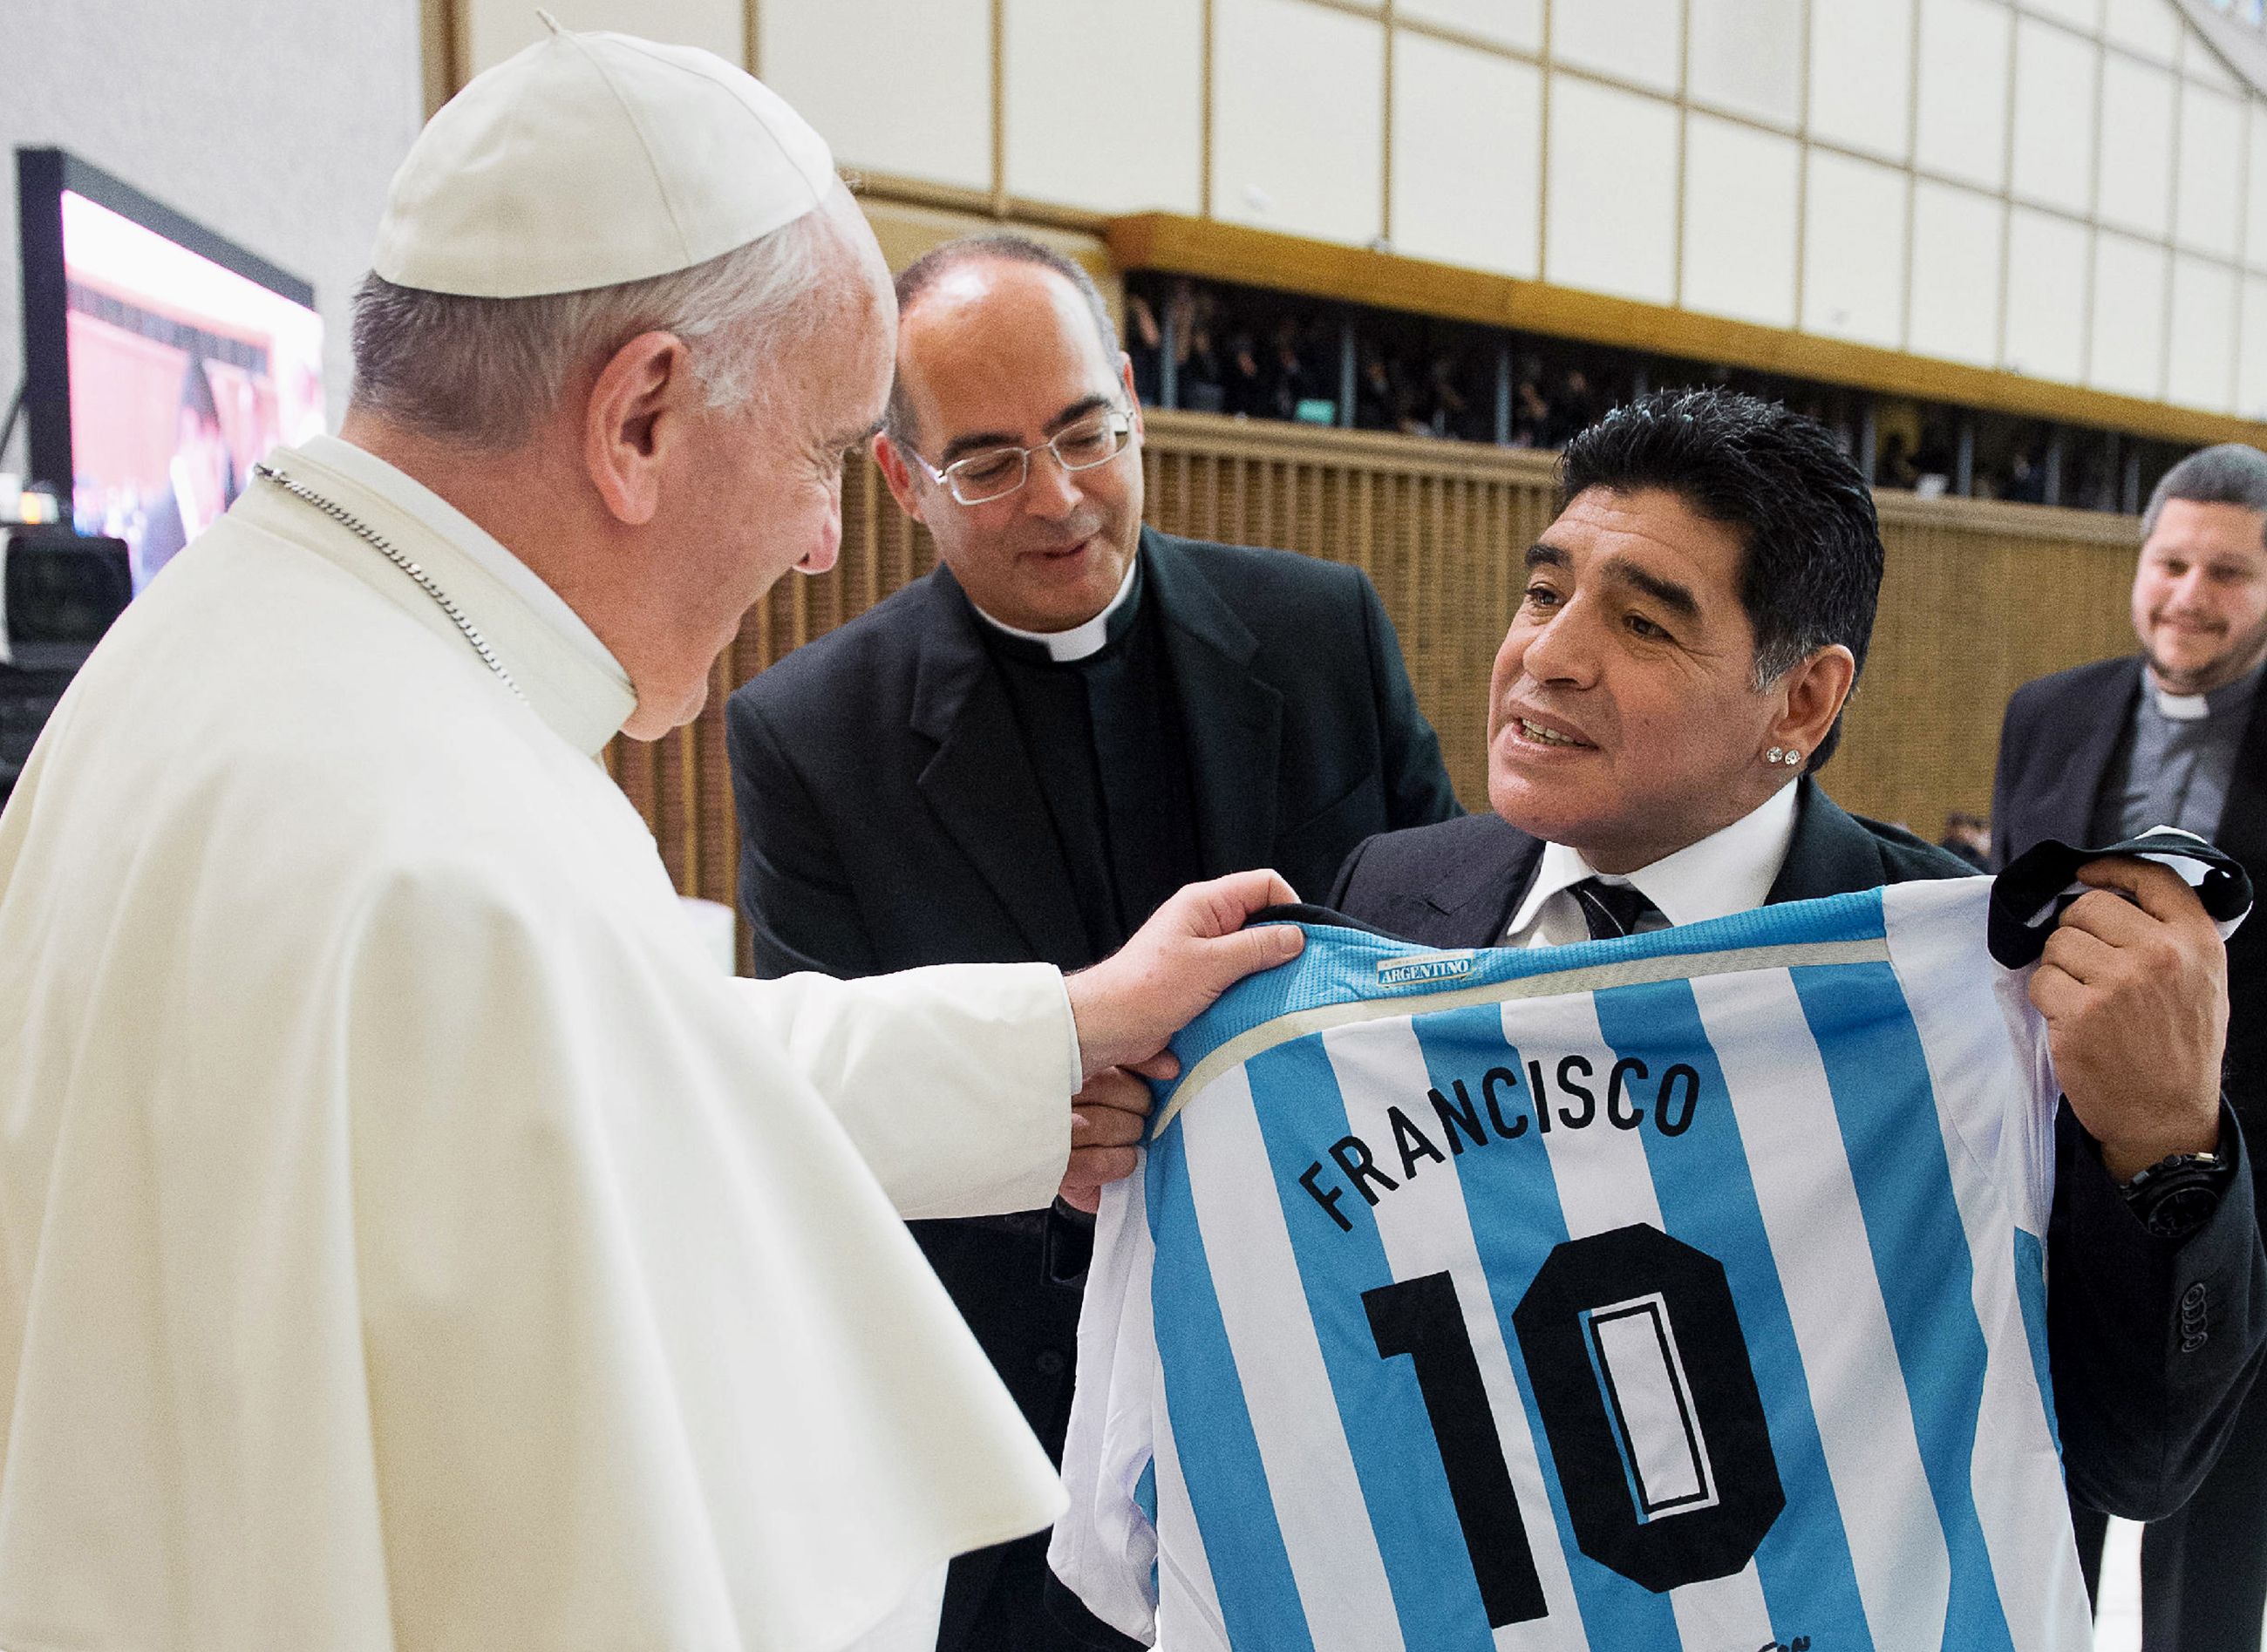 Football: Le pape François rend hommage au "poète" Maradona